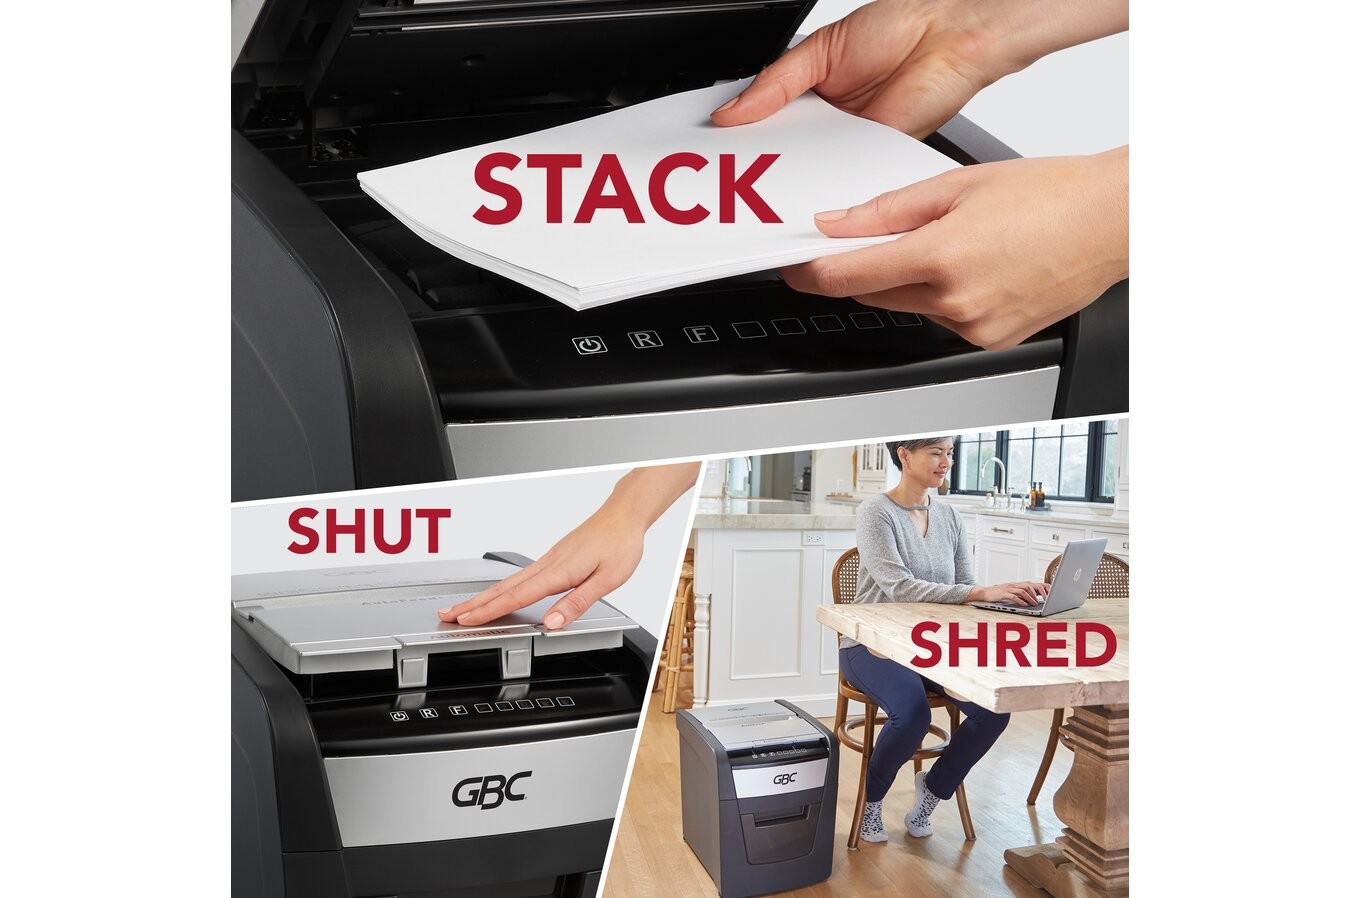 impresoras y scanners - Trituradora de papel,GBC  alimentación automática,  60 hojas 1